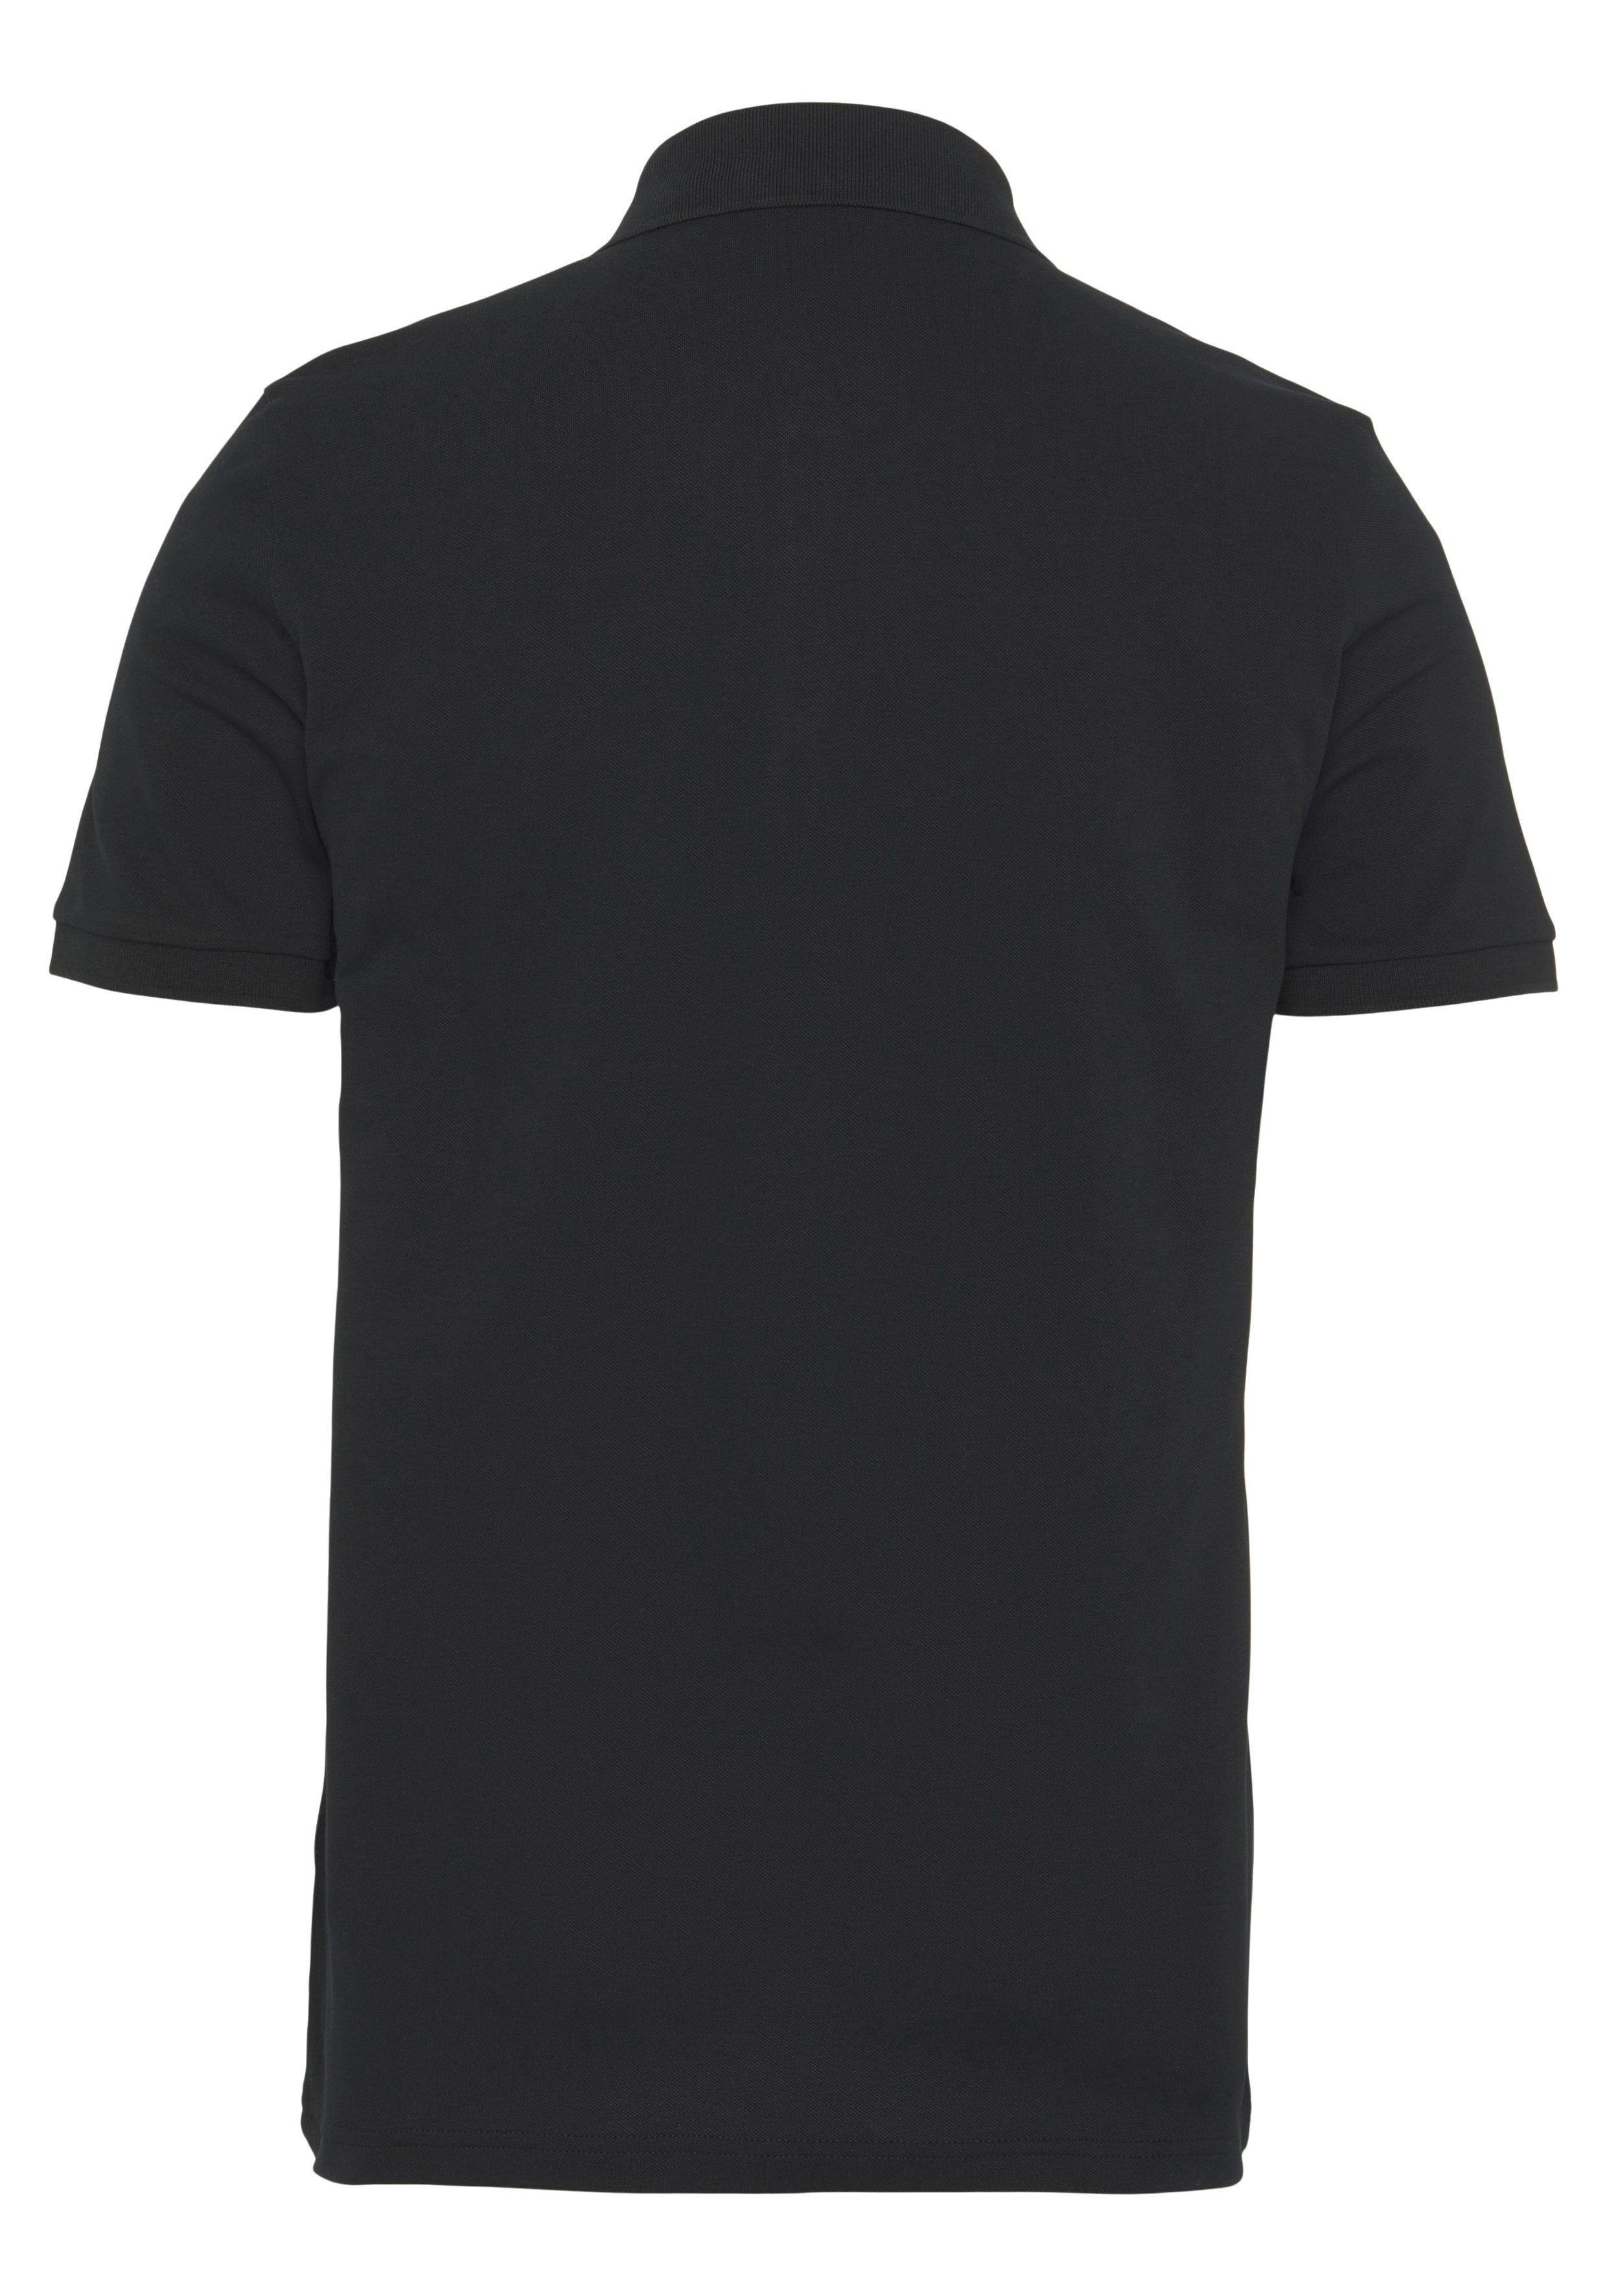 dezentem Poloshirt von Passenger schwarz mit Logo-Patch ORANGE BOSS BOSS